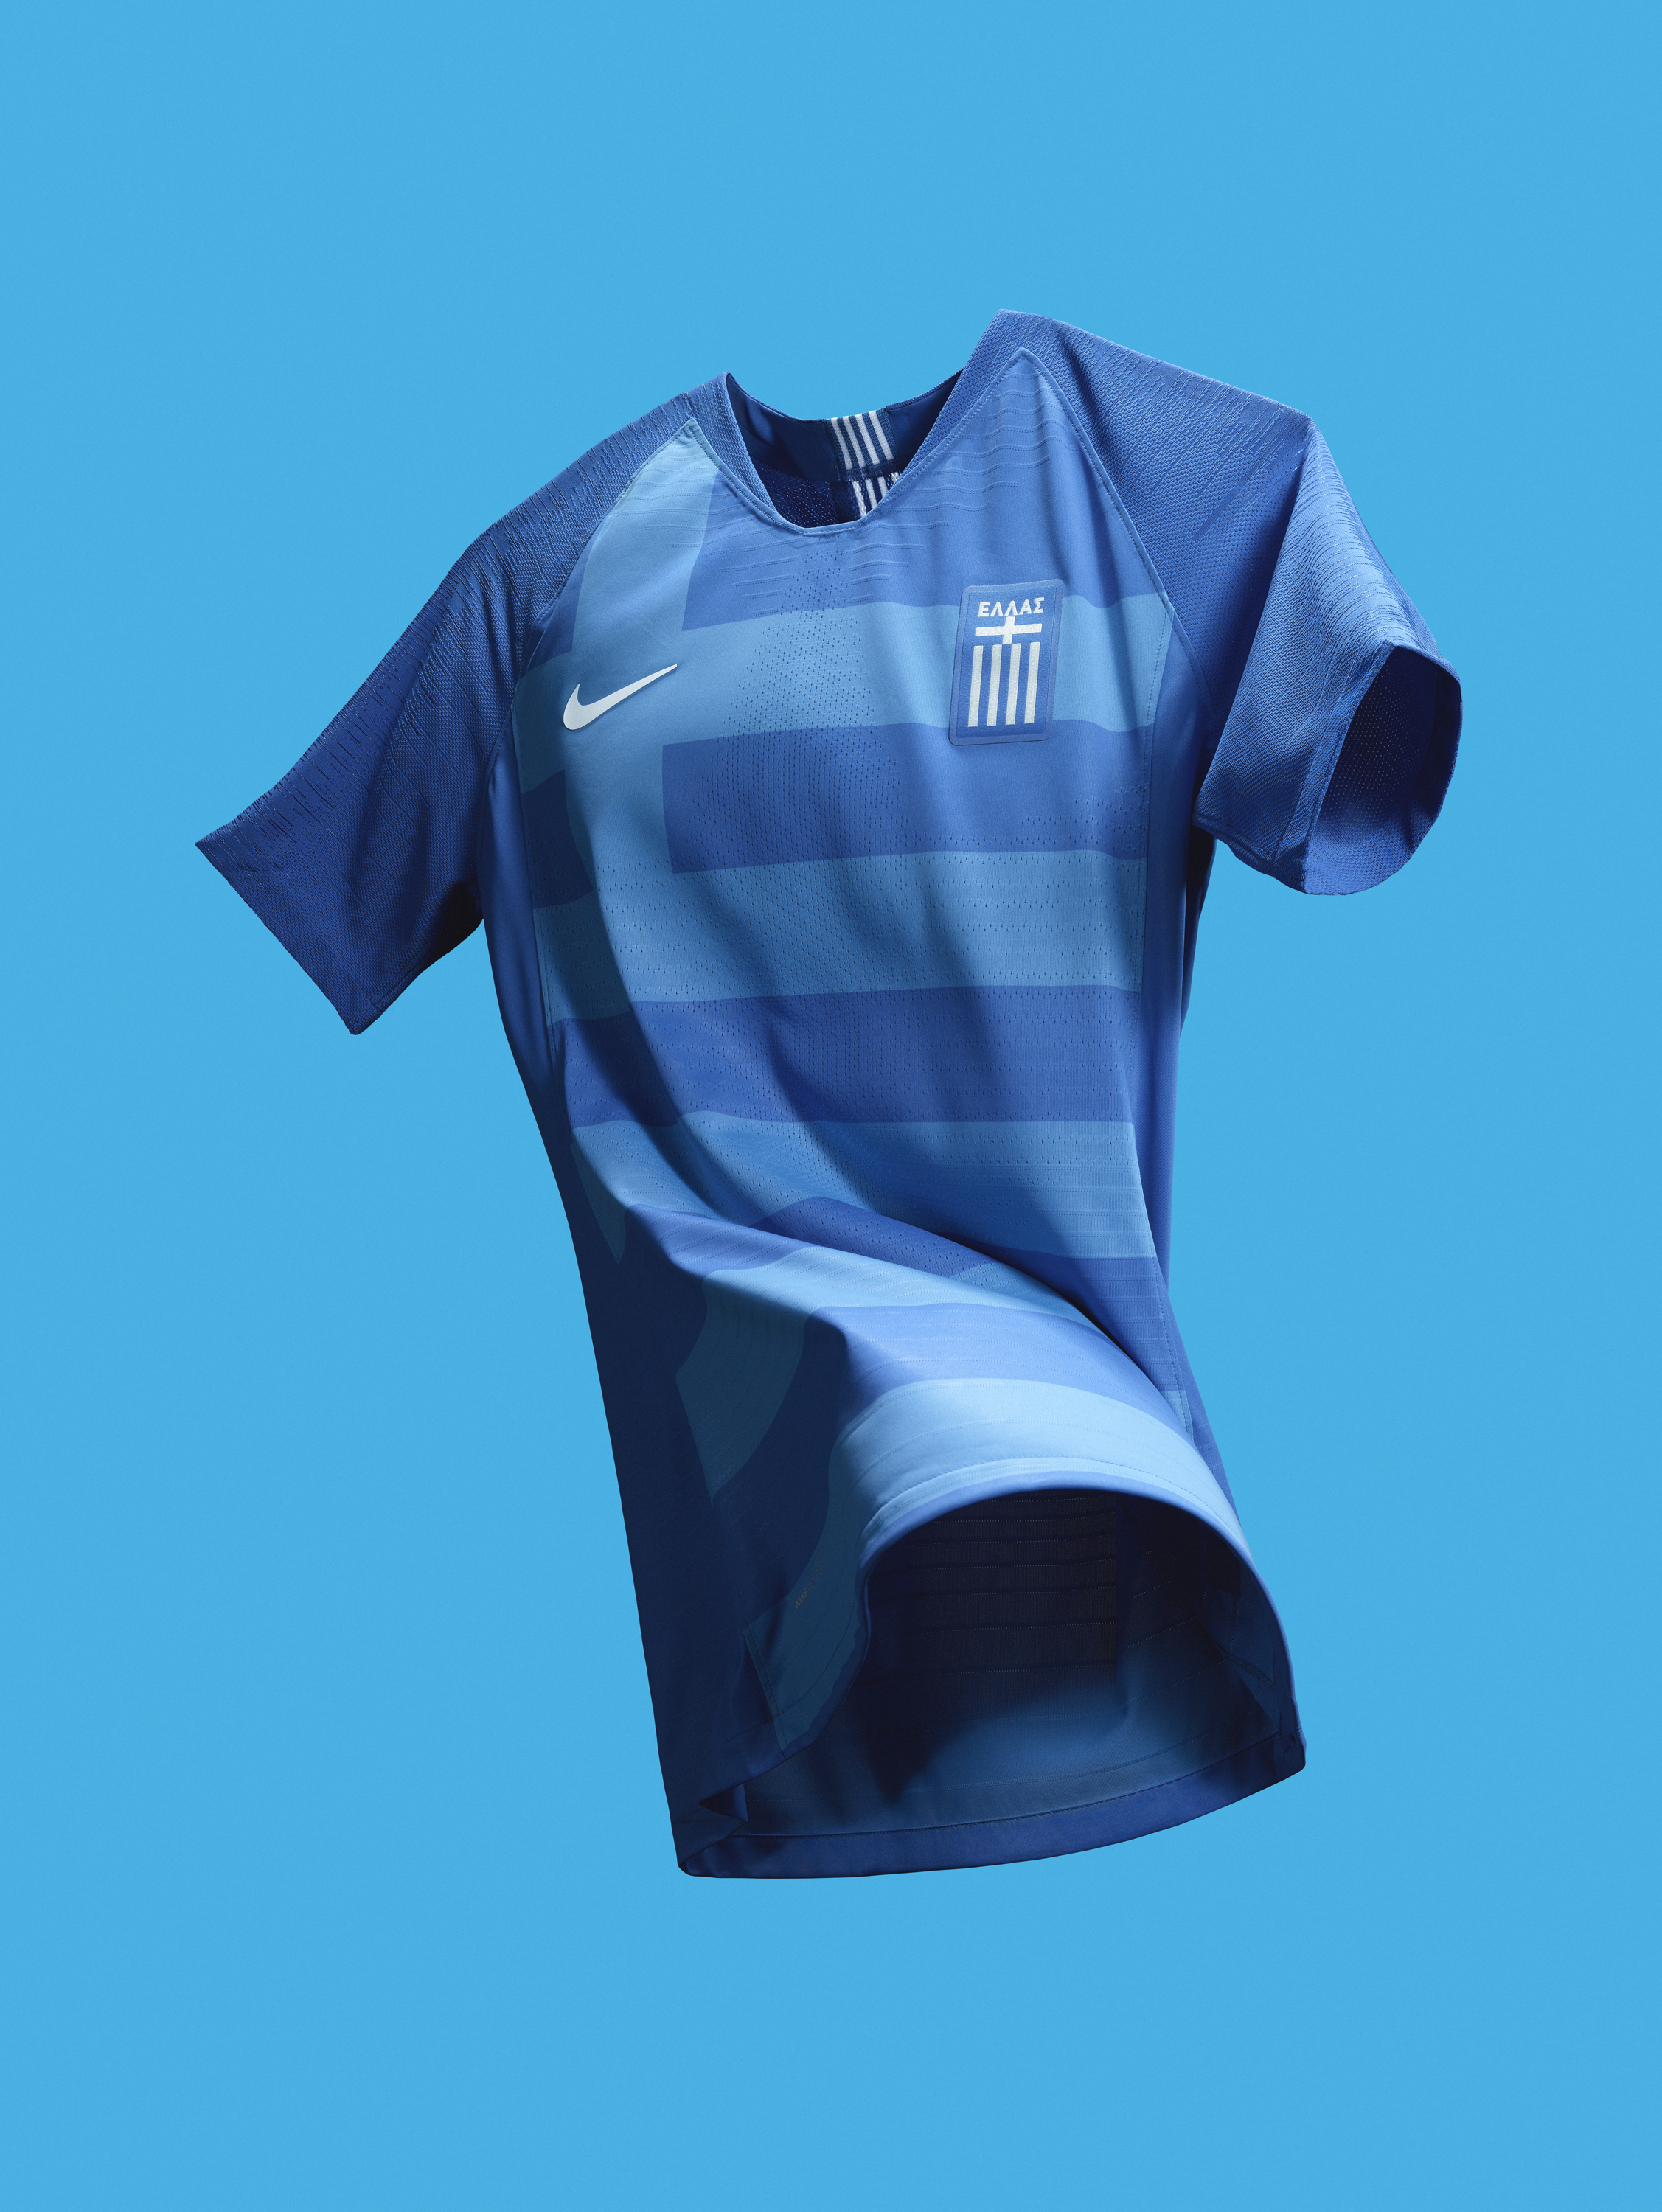 Nike Greece's national team jerseys — AGONAsport.com